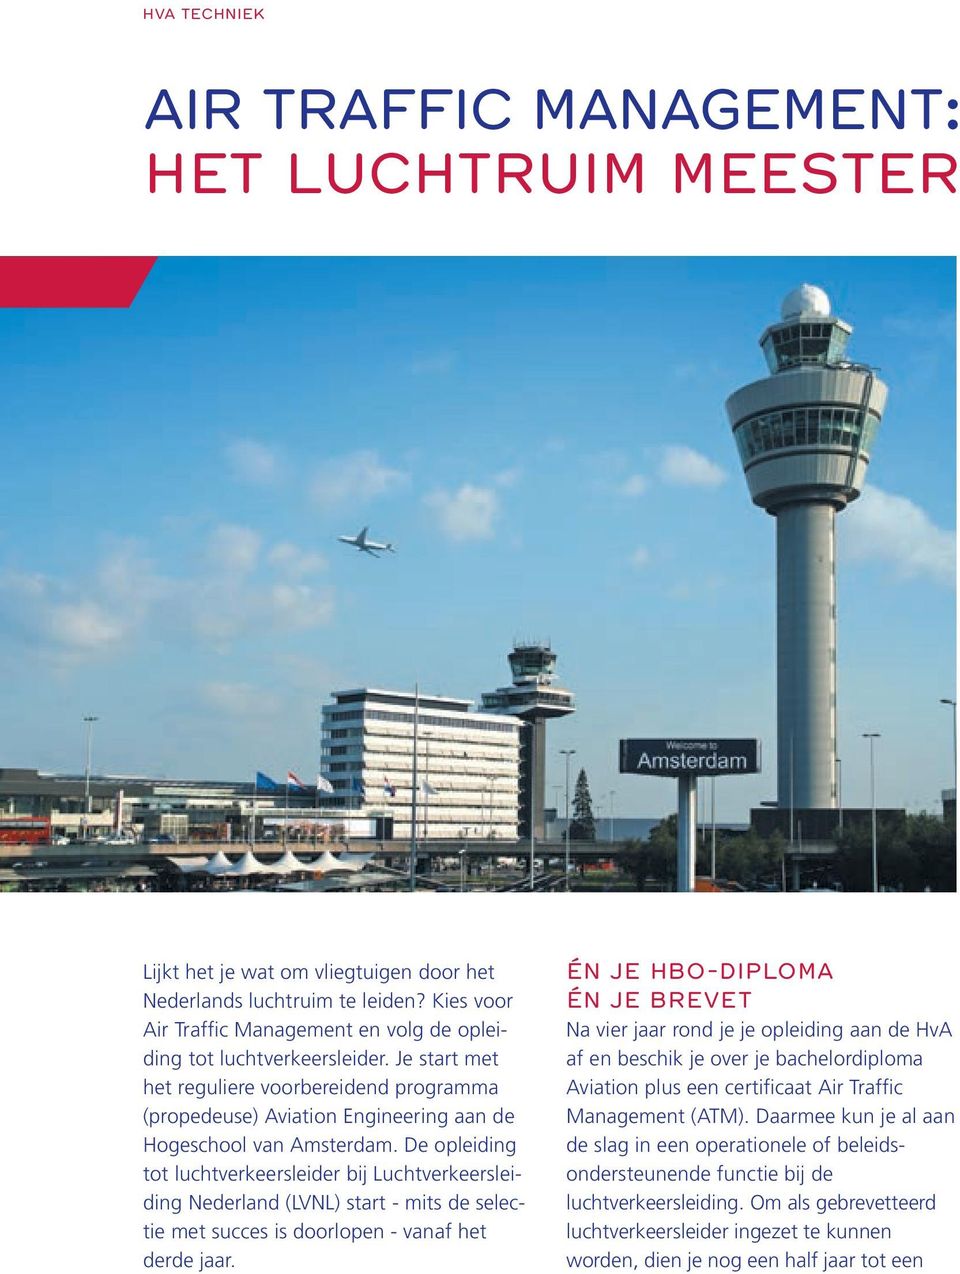 De opleiding tot luchtverkeersleider bij Luchtverkeersleiding Nederland (LVNL) start - mits de selectie met succes is doorlopen - vanaf het derde jaar.